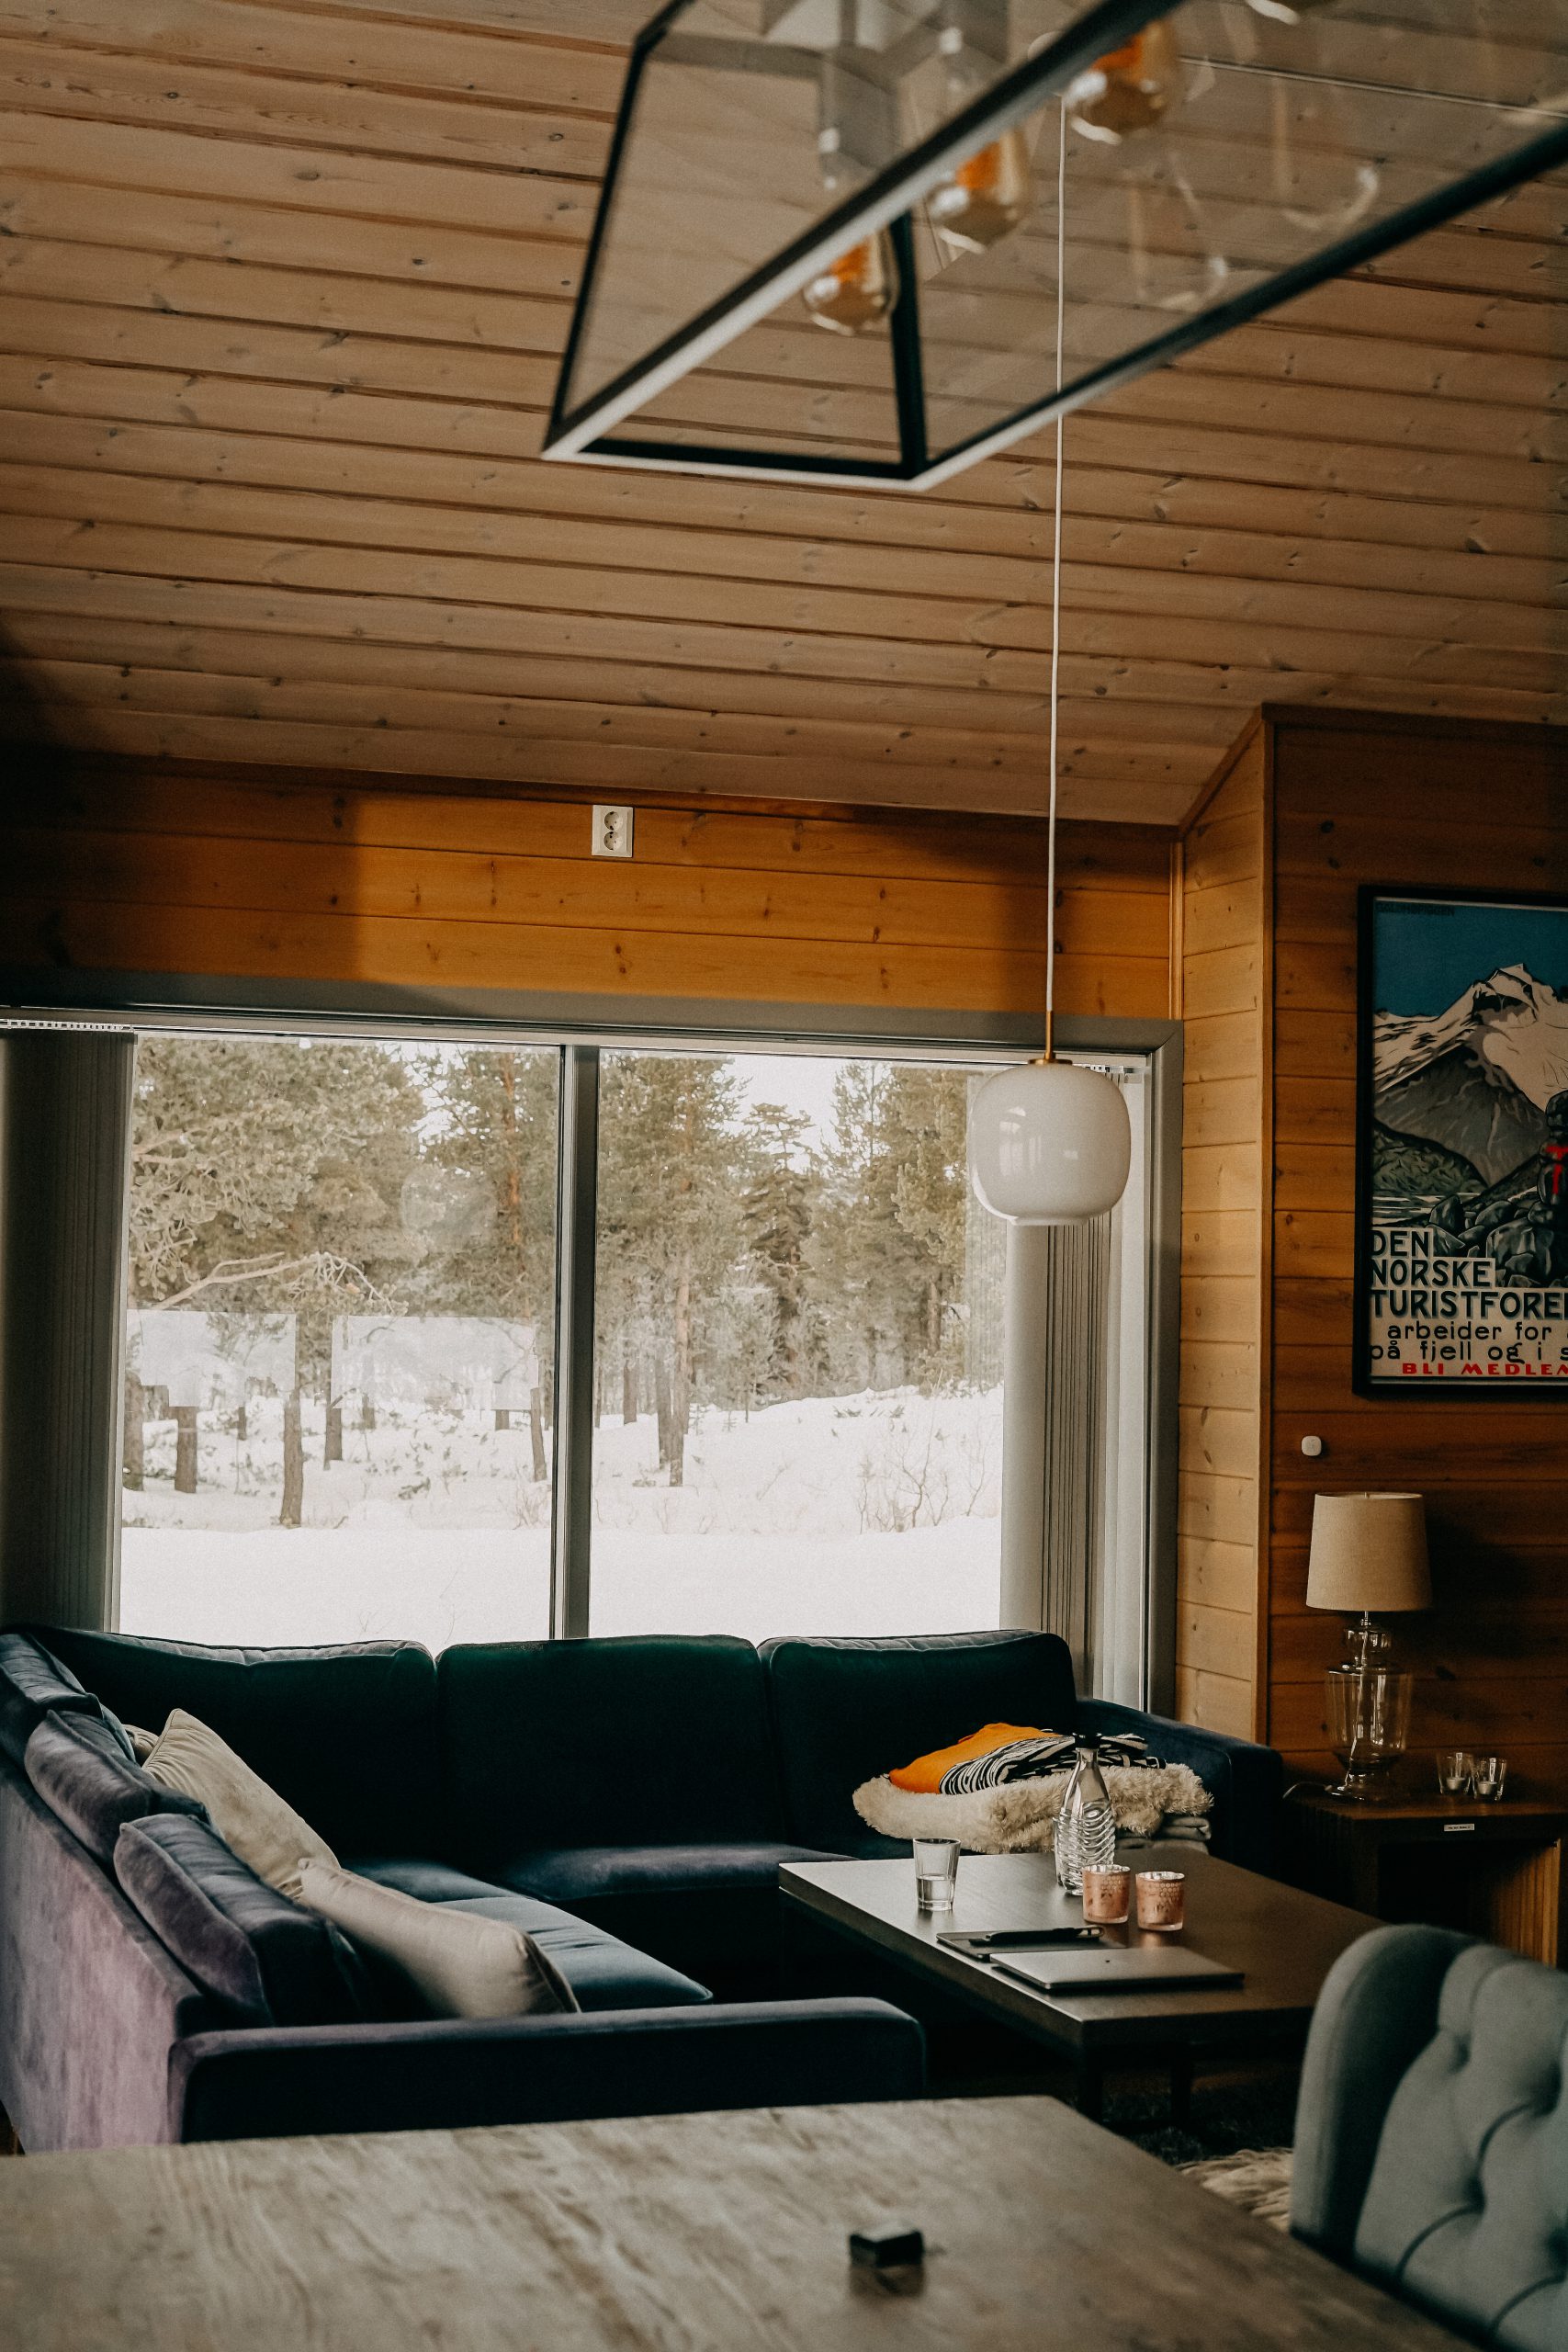 Airbnb Hütte Unterkunft Norwegen Jotunheimen Nationalpark Holzhütte Norwegen Winterurlaub Winterroute Auto Reiseblog Reisen mit Hund Tipps 2